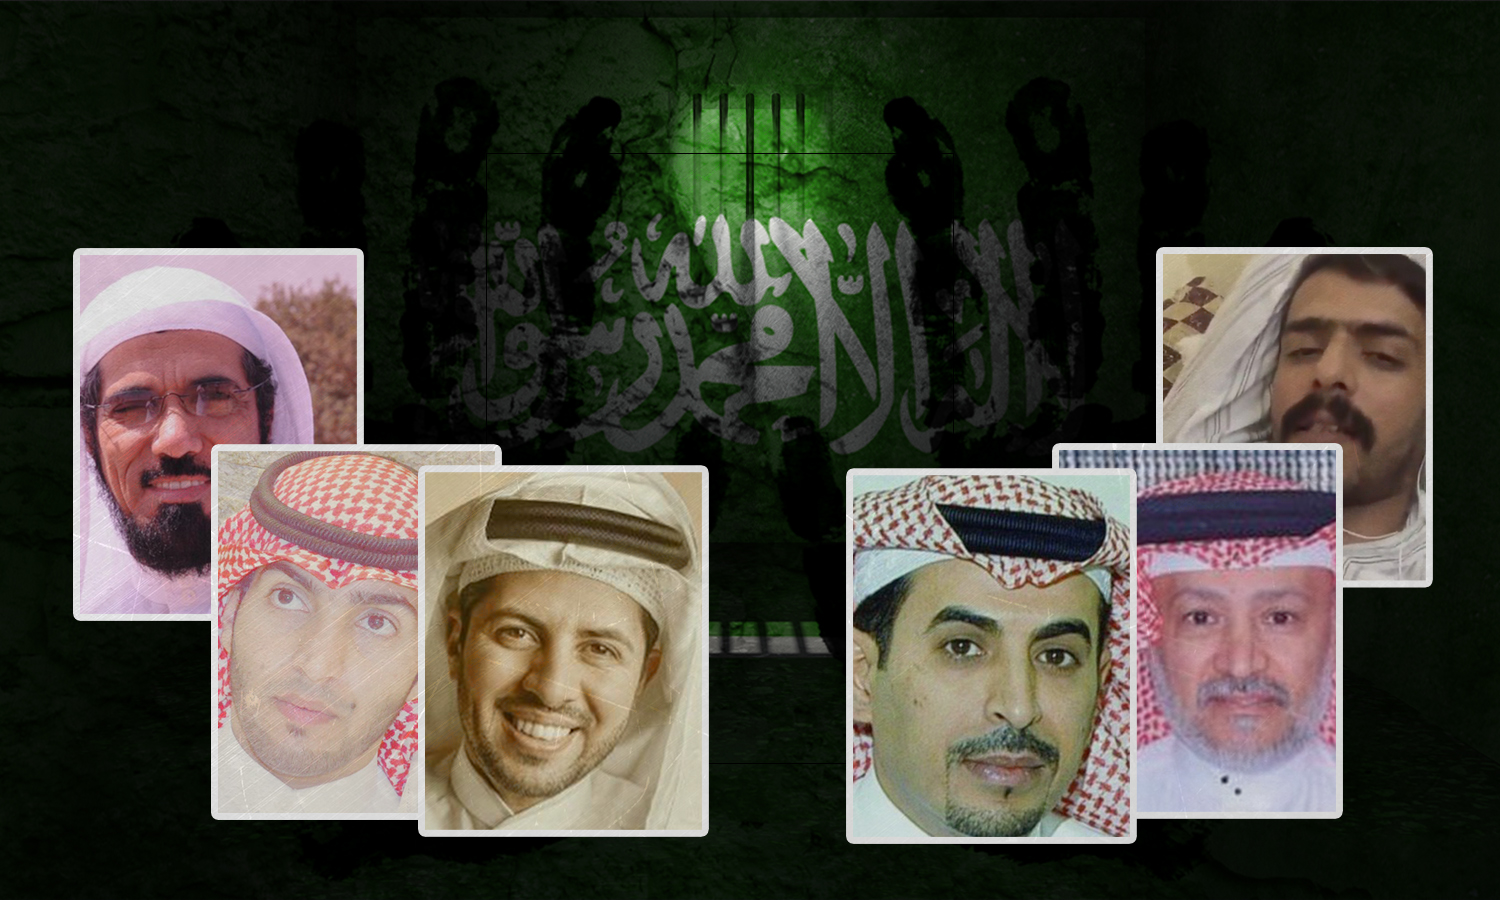 مطالب بالإفراج عن معتقلي الرأي في السعودية بعد المصالحة الخليجية | عنب بلدي